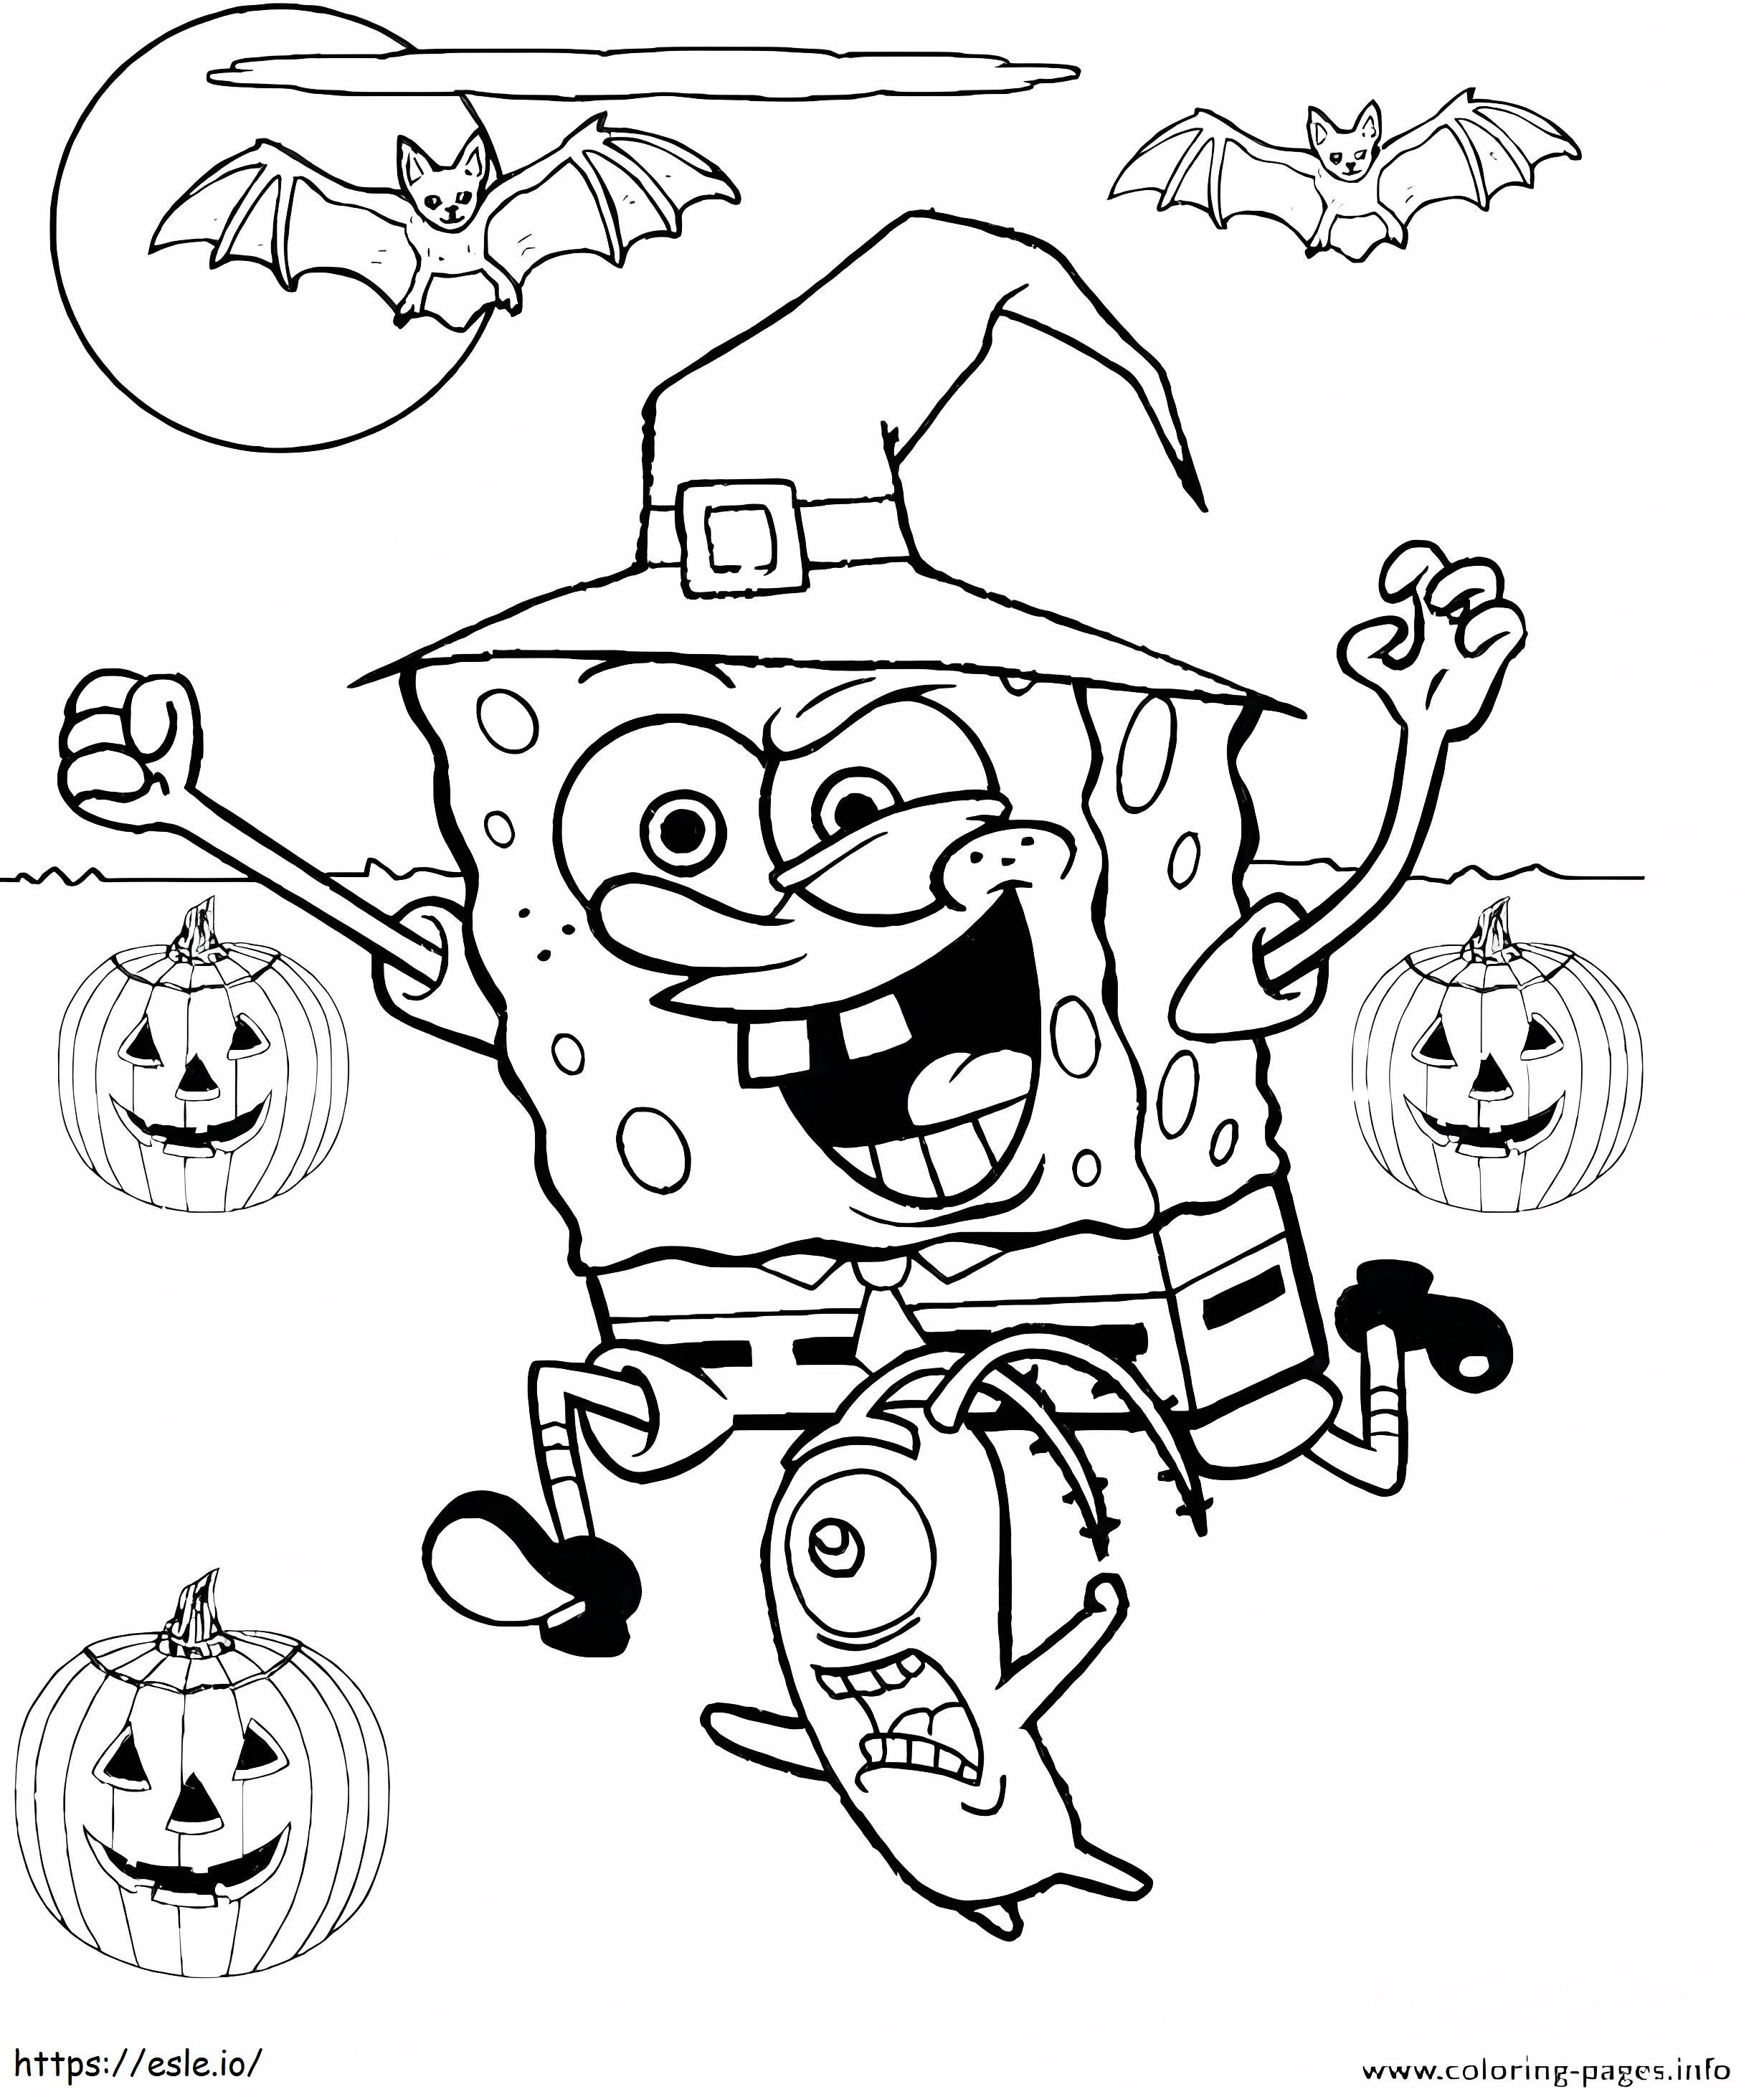 1539681012 Pagina de preșcolar cu casa bântuită imprimabilă gratuit Vampirul Foggy Kids Spooky Disney Stitch de colorat